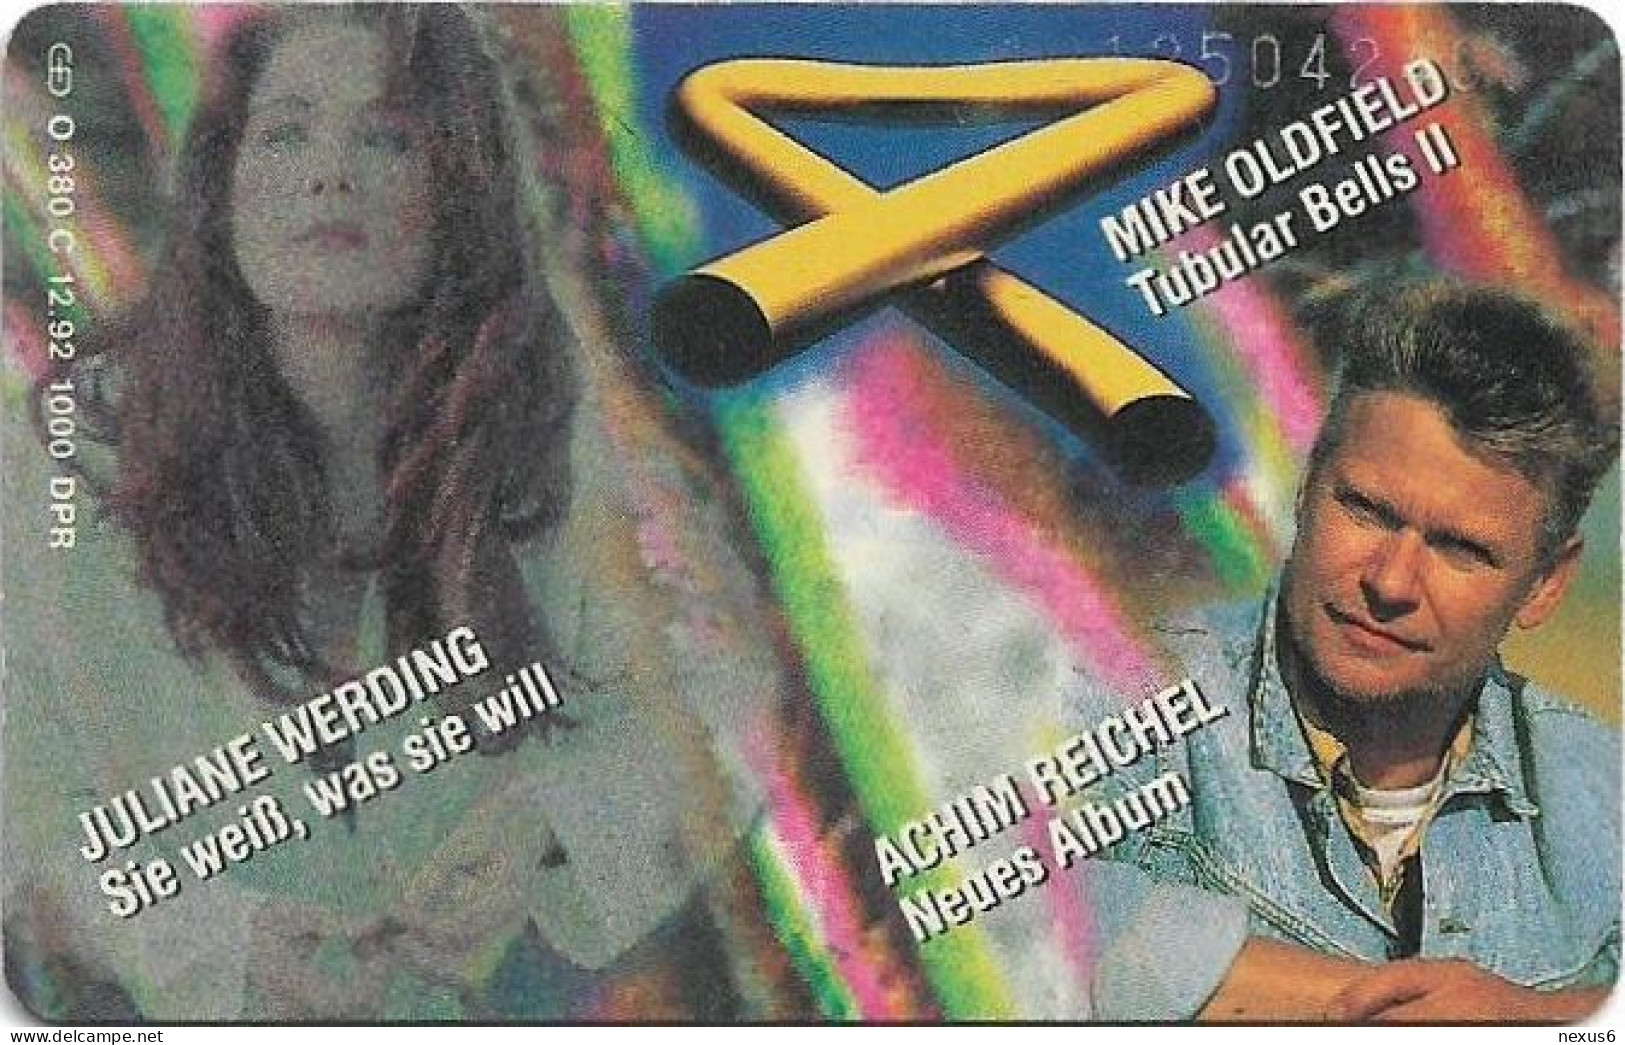 Germany - WEA Musik 13 - Juliane Werding, Mike Oldfield, Achim Reich - O 0380C - 12.1992, 6DM, 1.000ex, Used - O-Series : Series Clientes Excluidos Servicio De Colección